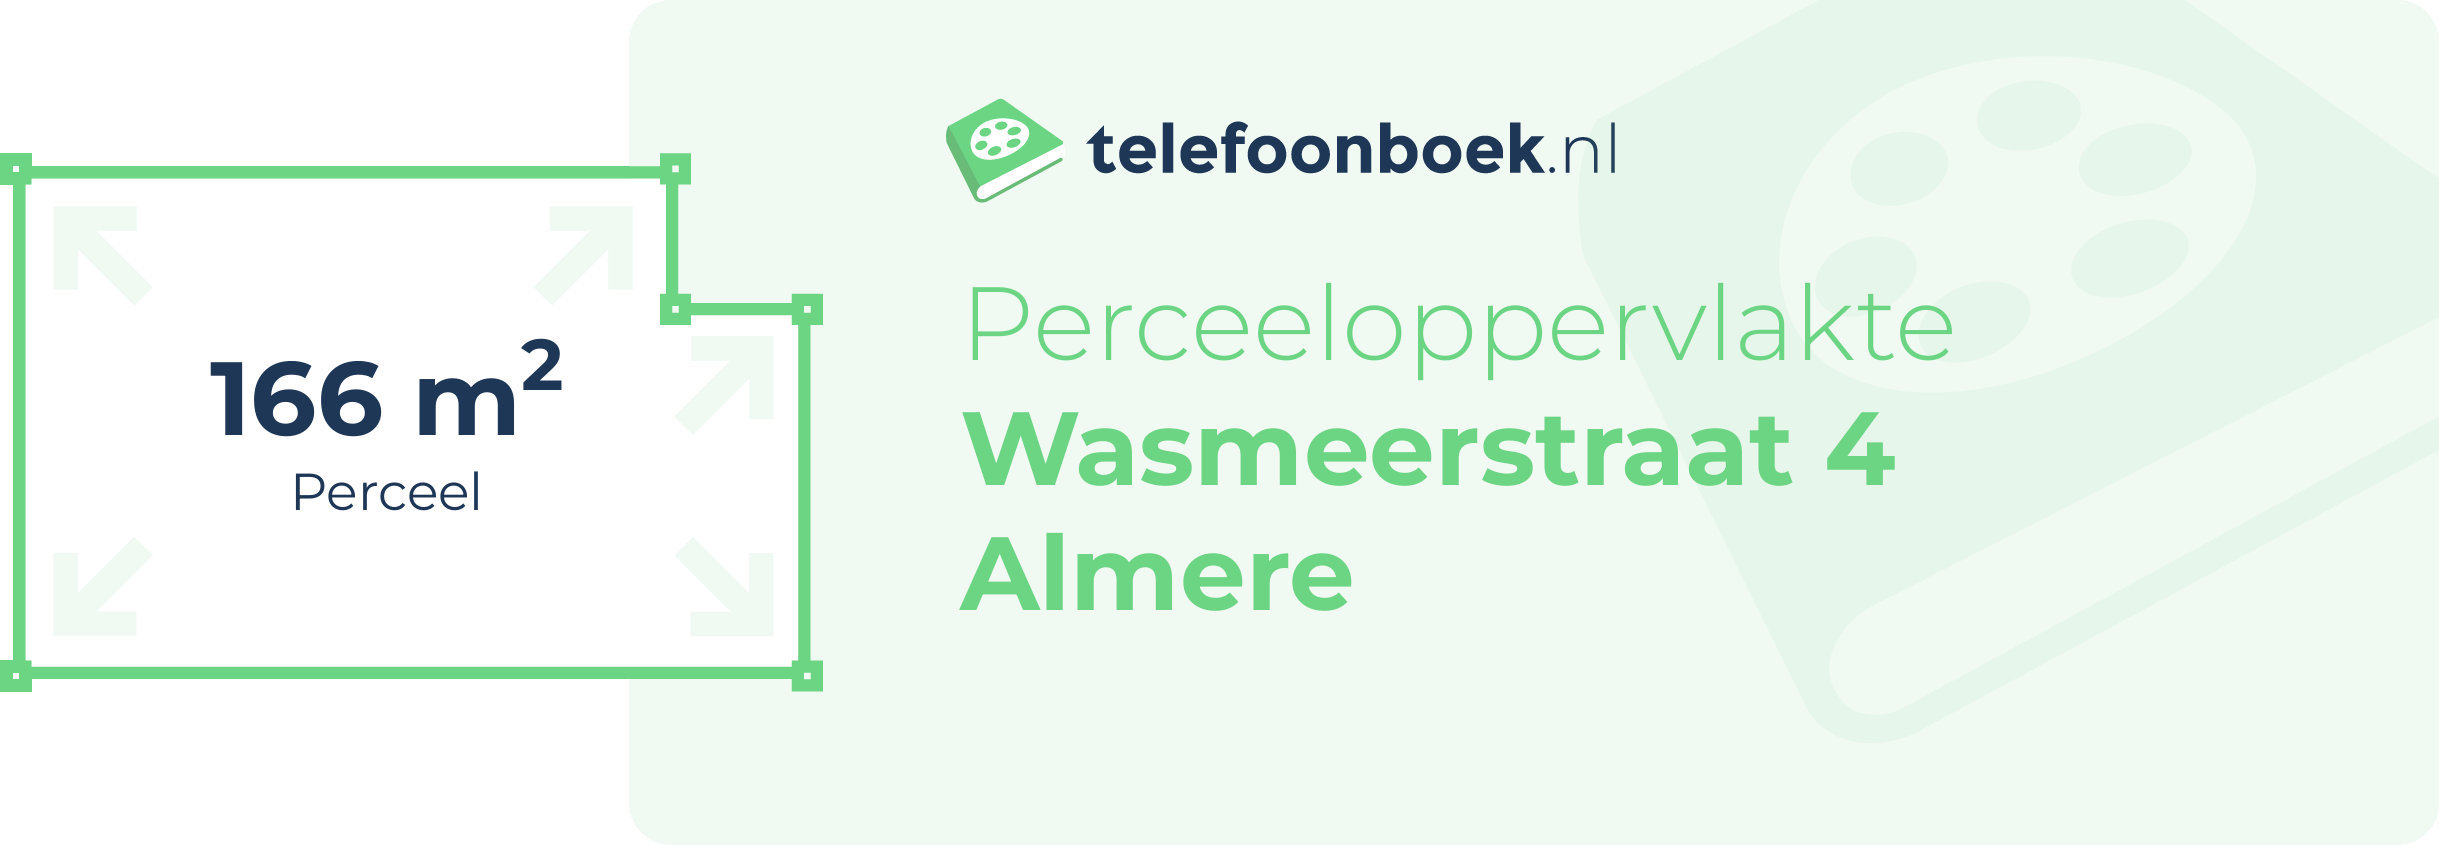 Perceeloppervlakte Wasmeerstraat 4 Almere